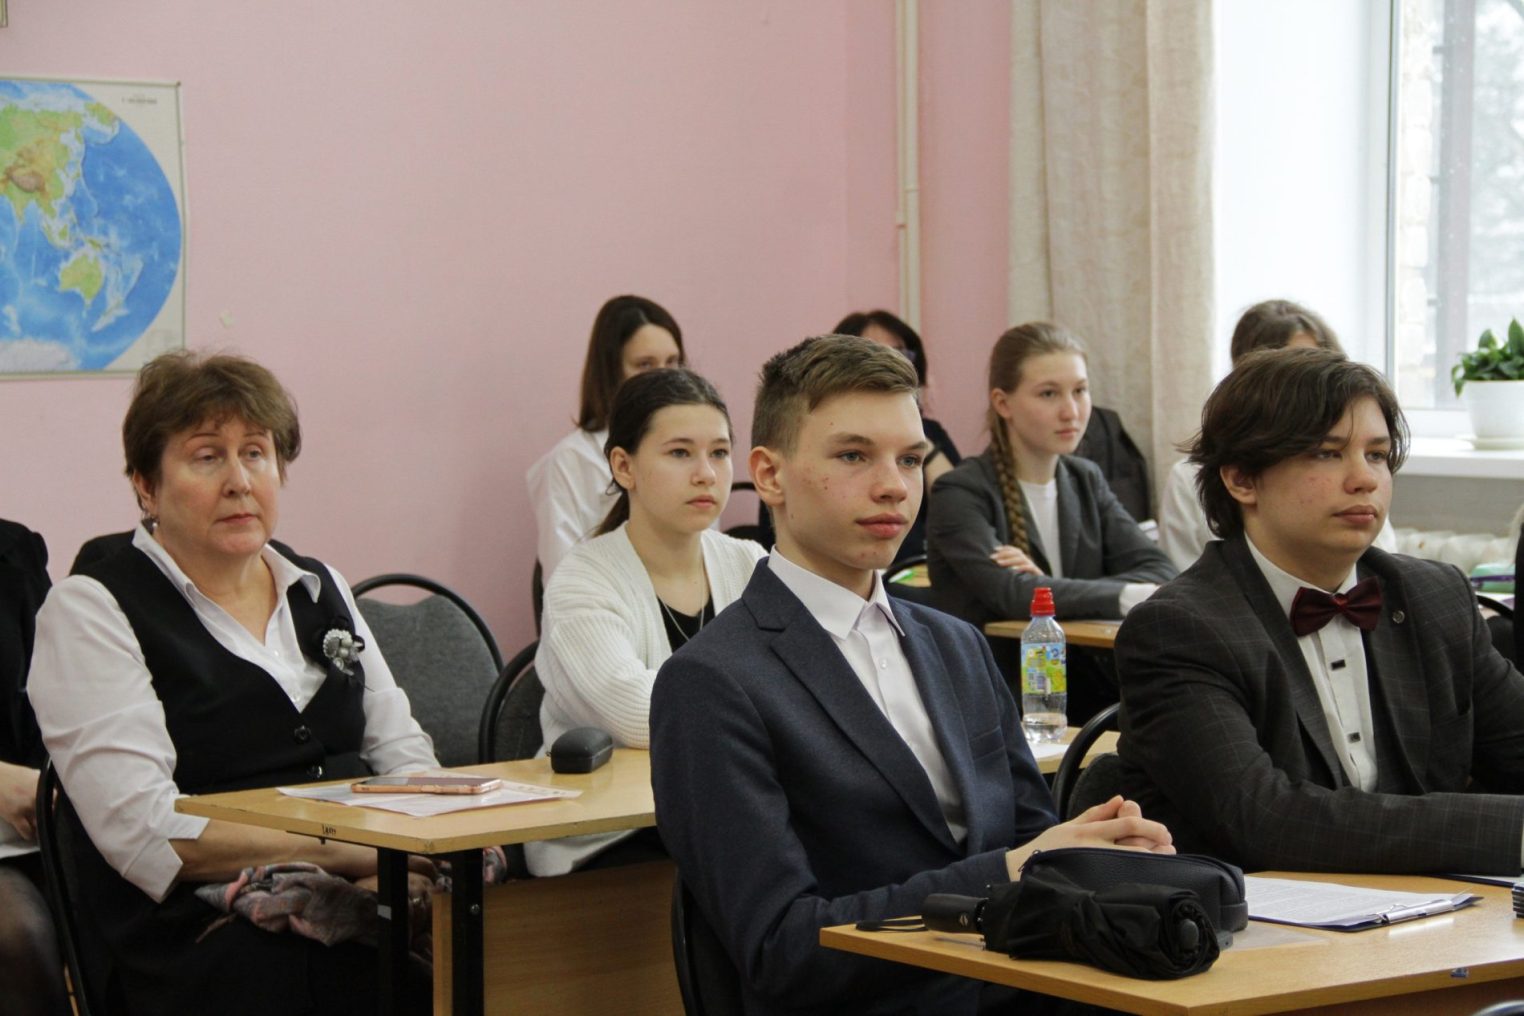 26-й раз в Костроме проходит научный форум для молодёжи «Шаг в будущее»